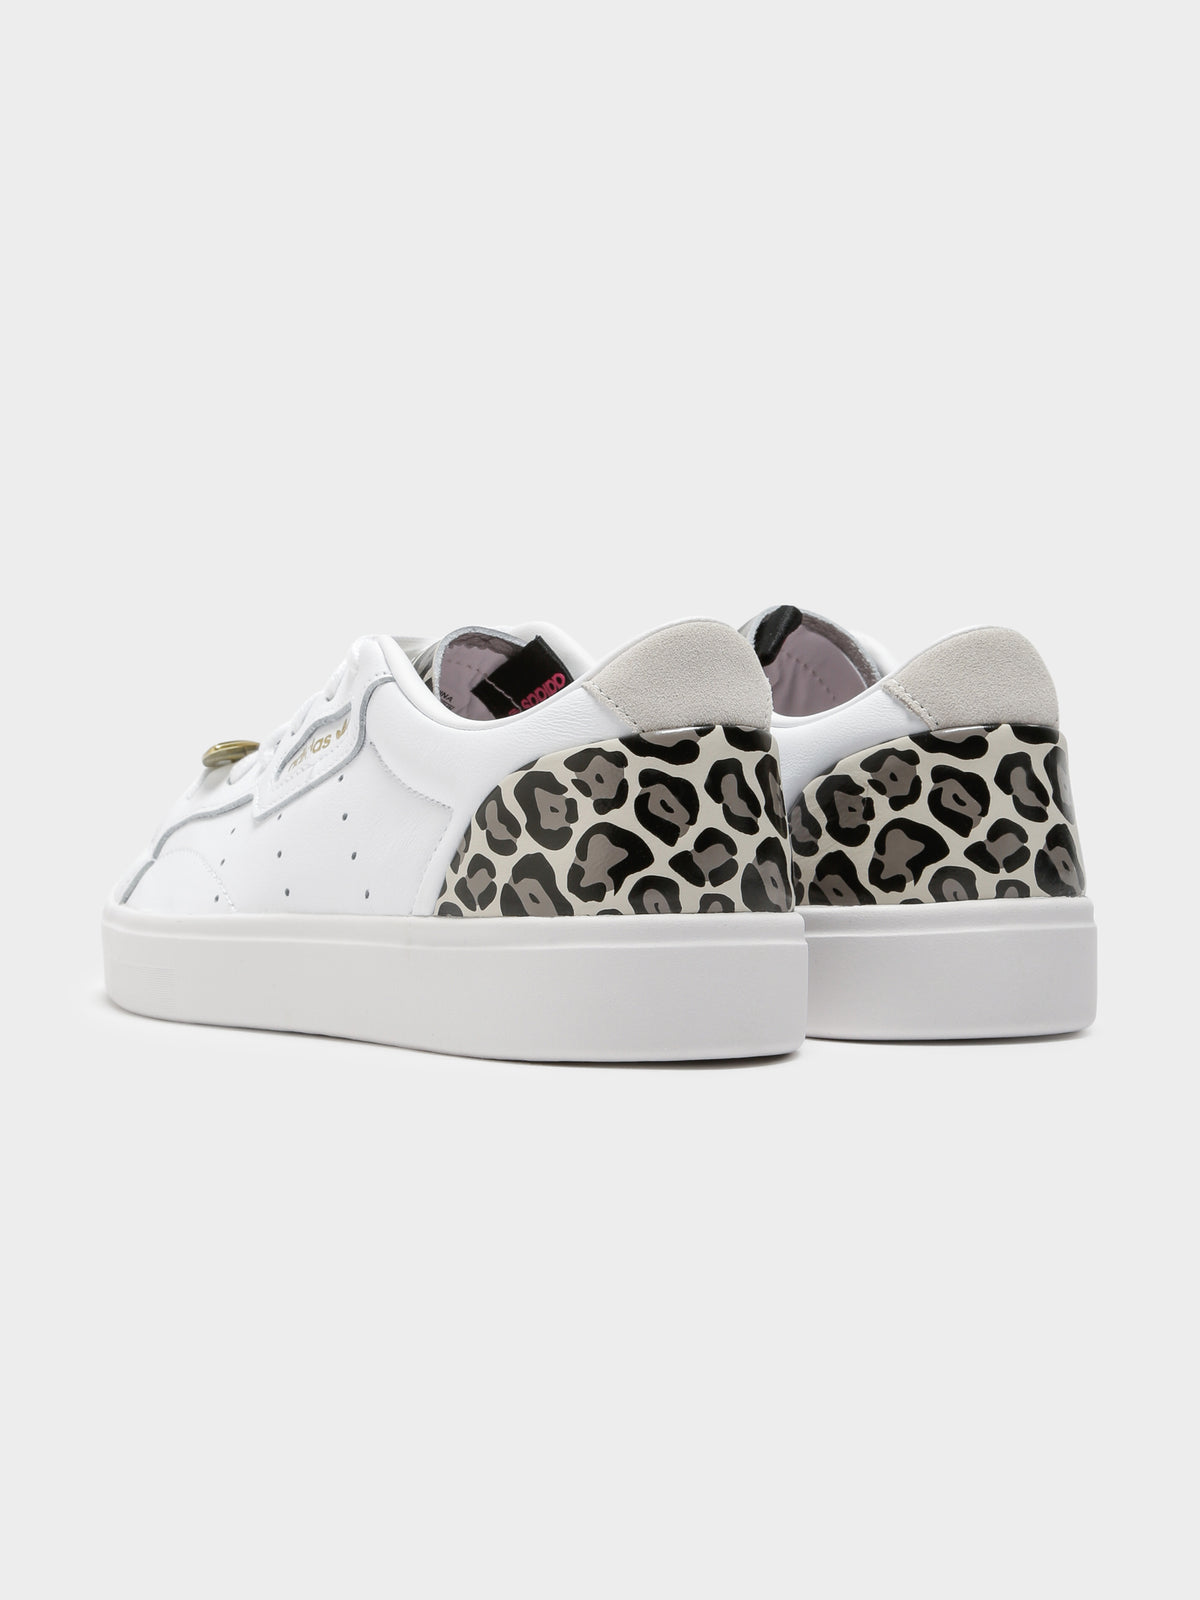 Womens Sleek Sneakers in Leopard